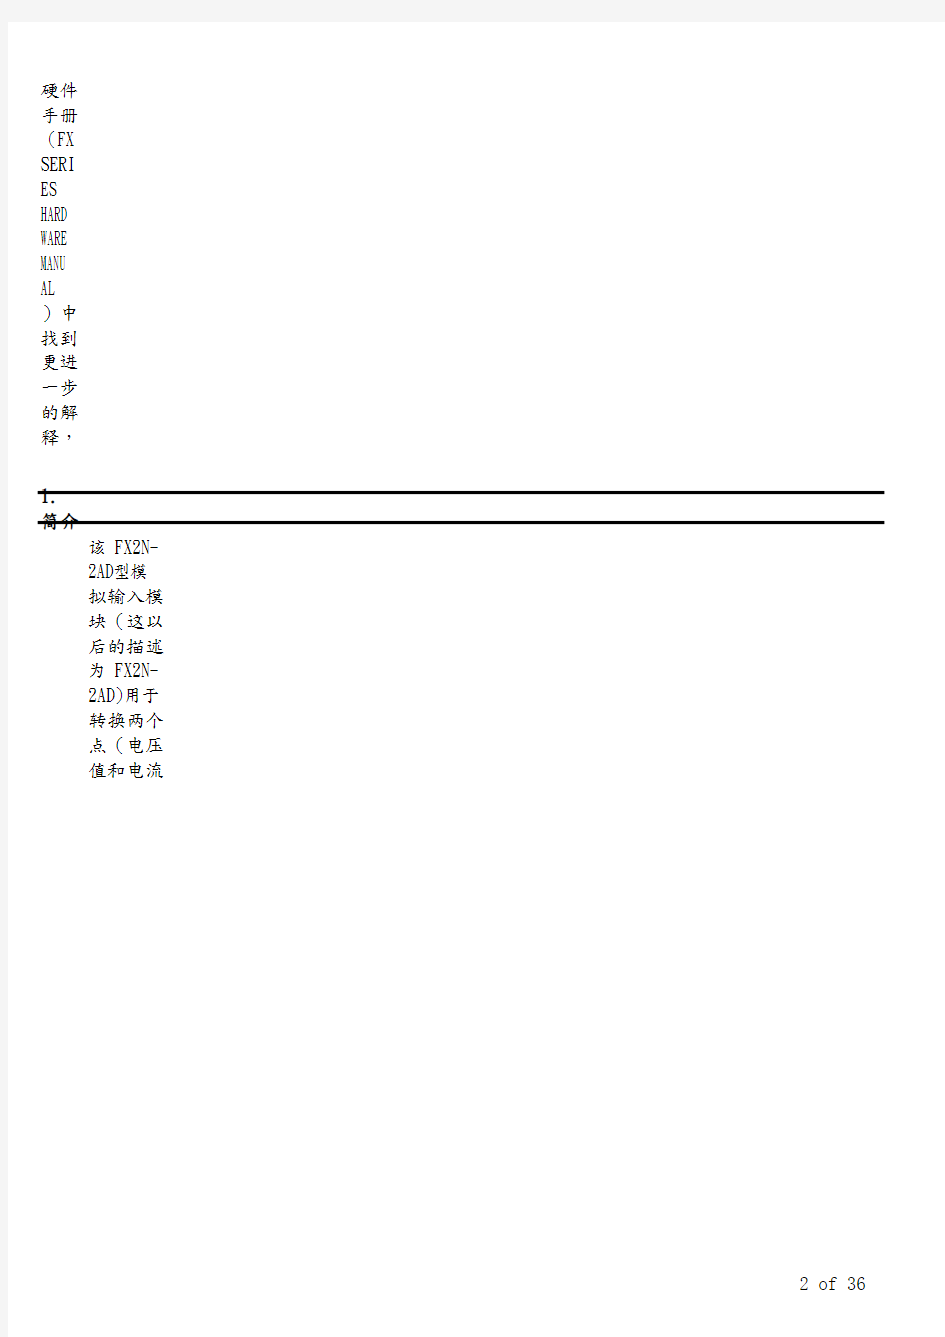 FX2N-2AD模拟量输入模块编程使用手册-中文版